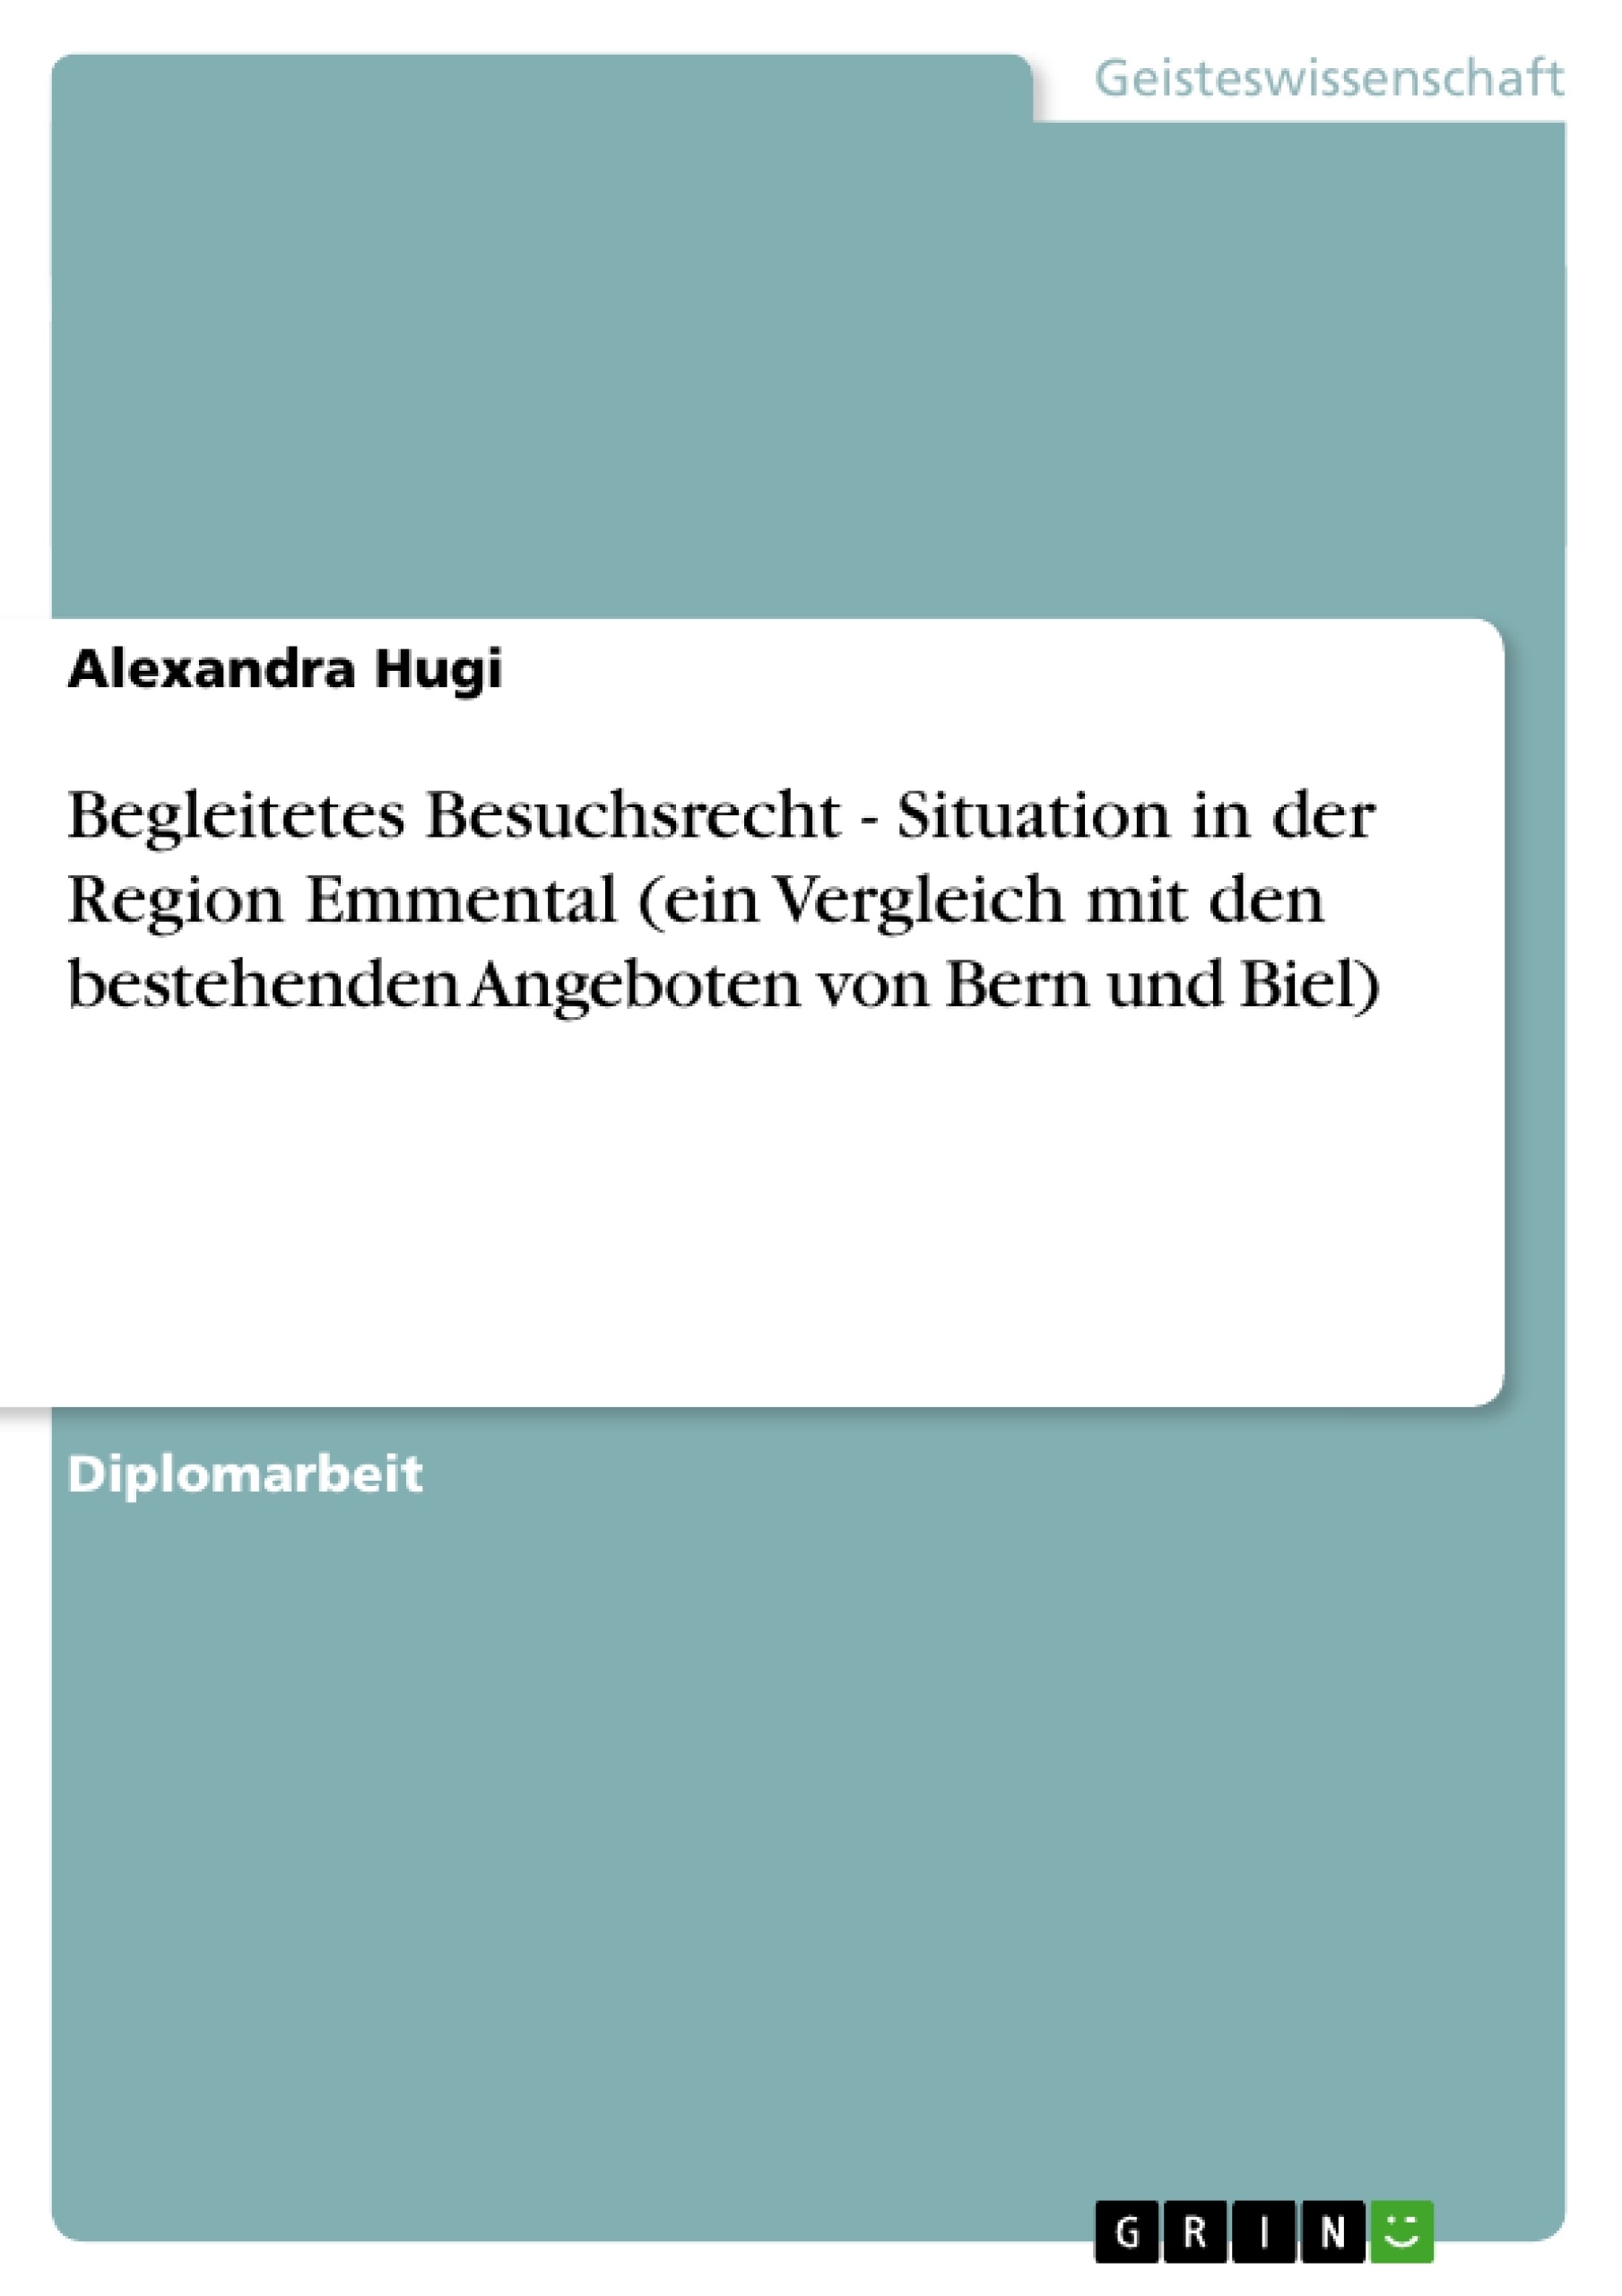 Title: Begleitetes Besuchsrecht - Situation in der Region Emmental (ein Vergleich mit den bestehenden Angeboten von Bern und Biel)